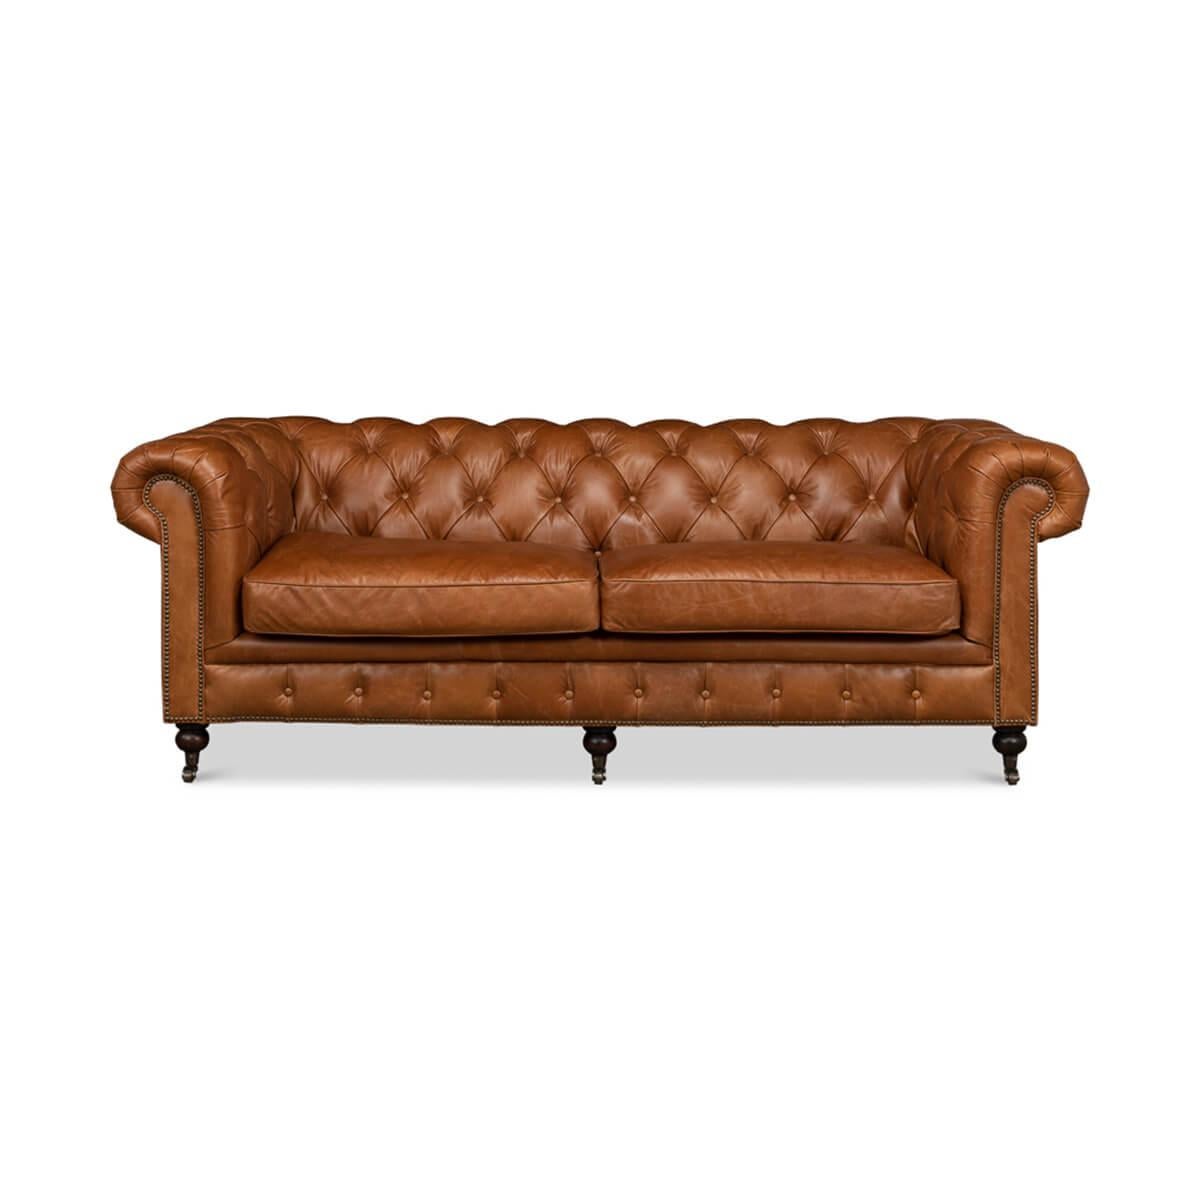 Canapé Chesterfield classique de style vintage en cuir brun de Vienne. Ce canapé traditionnel de style anglais est doté d'un intérieur capitonné, d'accoudoirs à enroulement, de garnitures en tête de clou et de pieds tournés avec des roulettes à